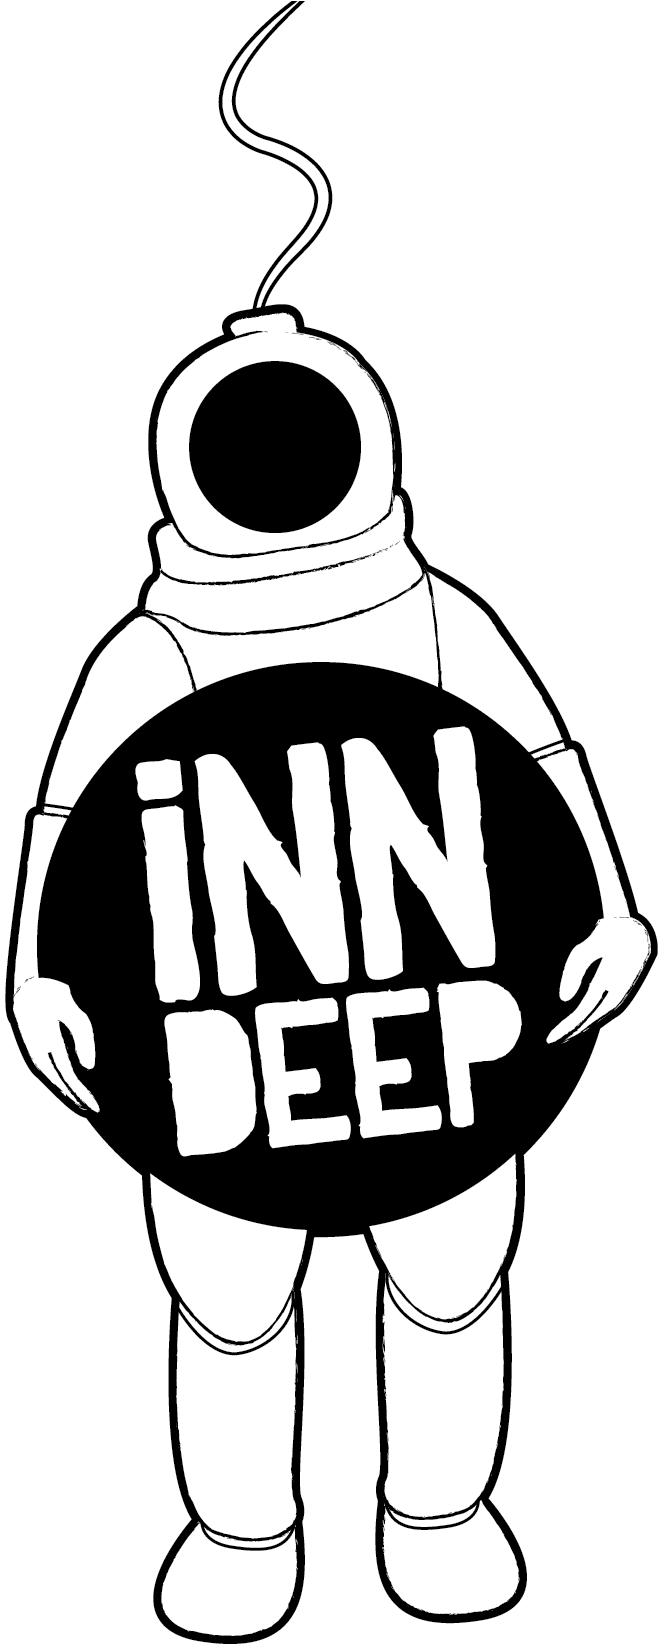 Connect - Inn Deep (1041x1647)